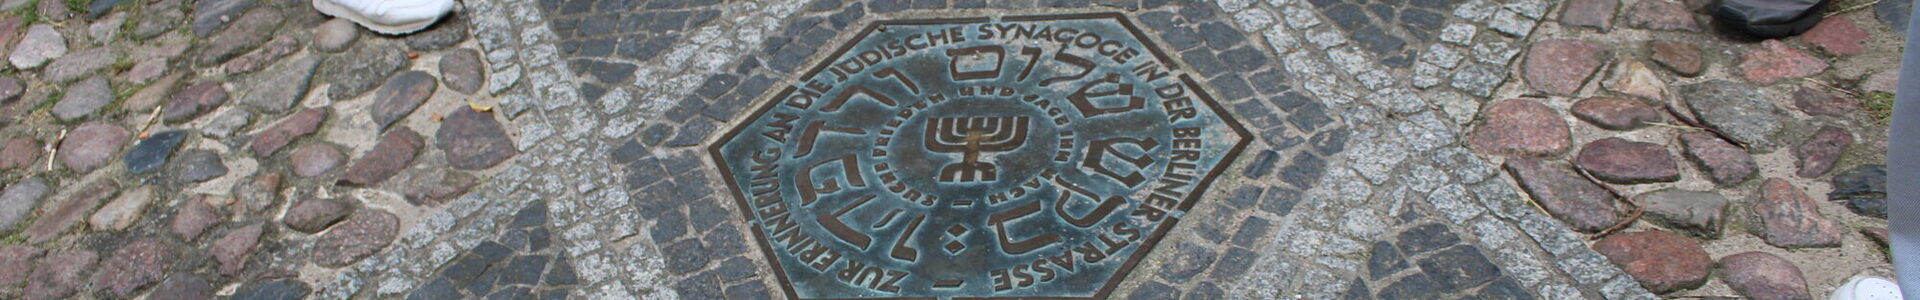 Erinnerungsort für die jüdische Synagoge in Templin